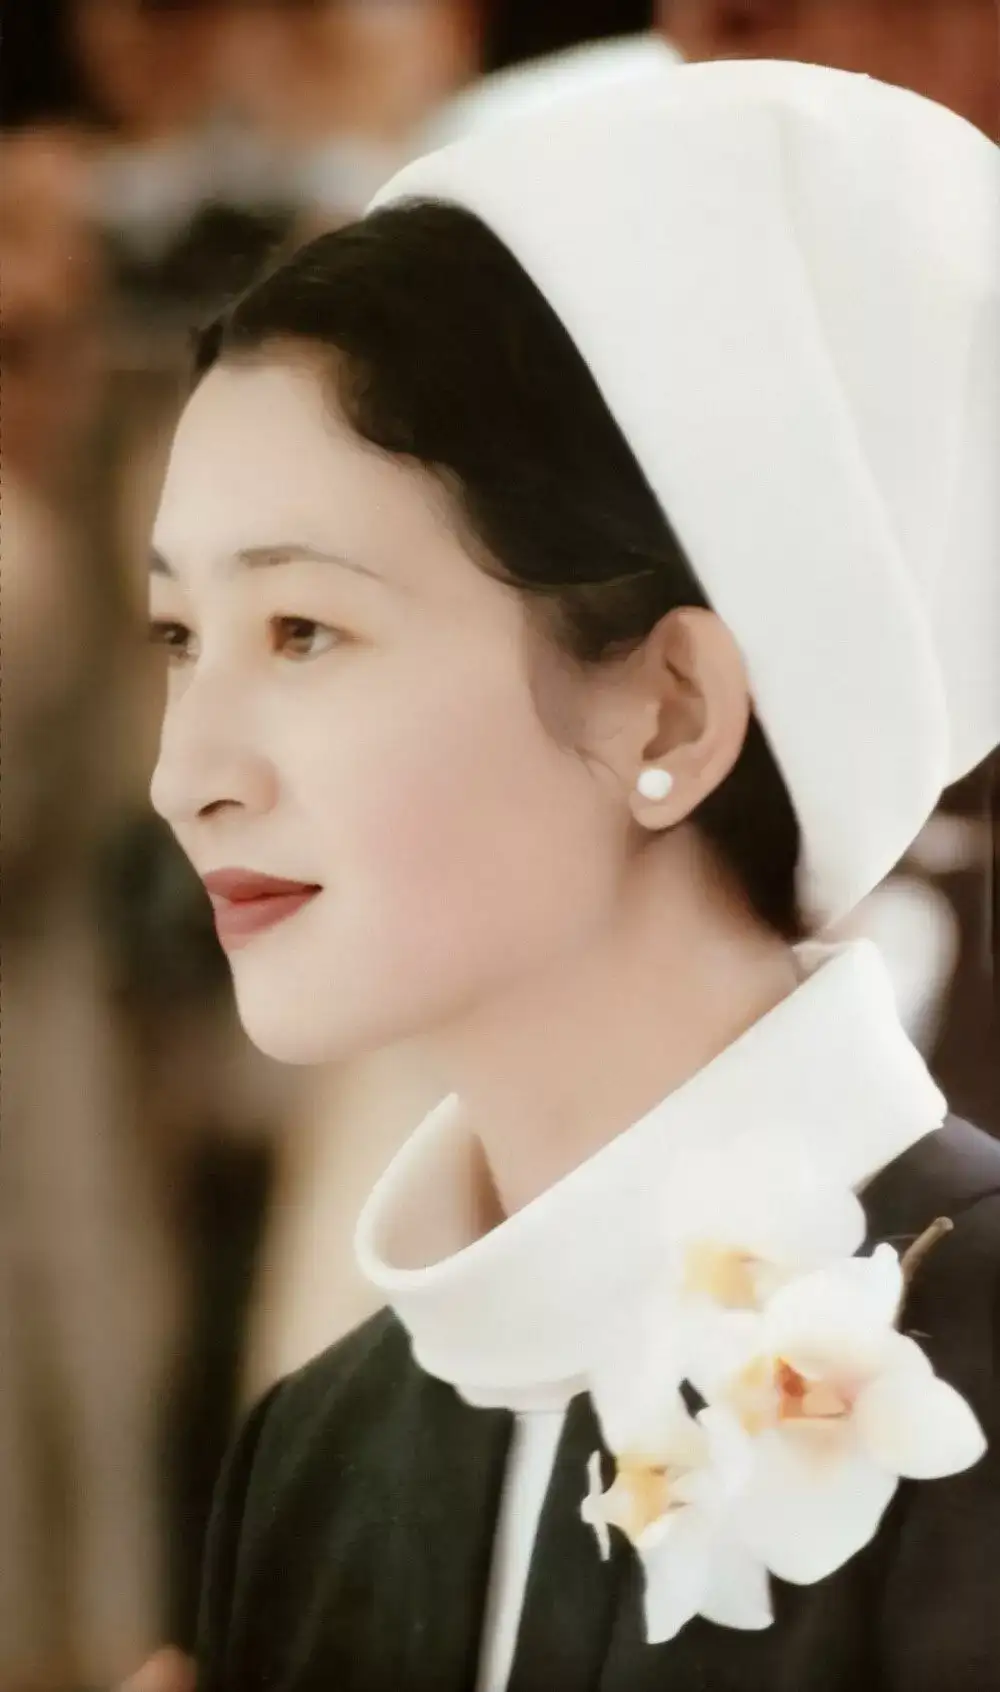 她是日本皇室首位平民皇后 也是日本最会穿衣服的女人 知乎